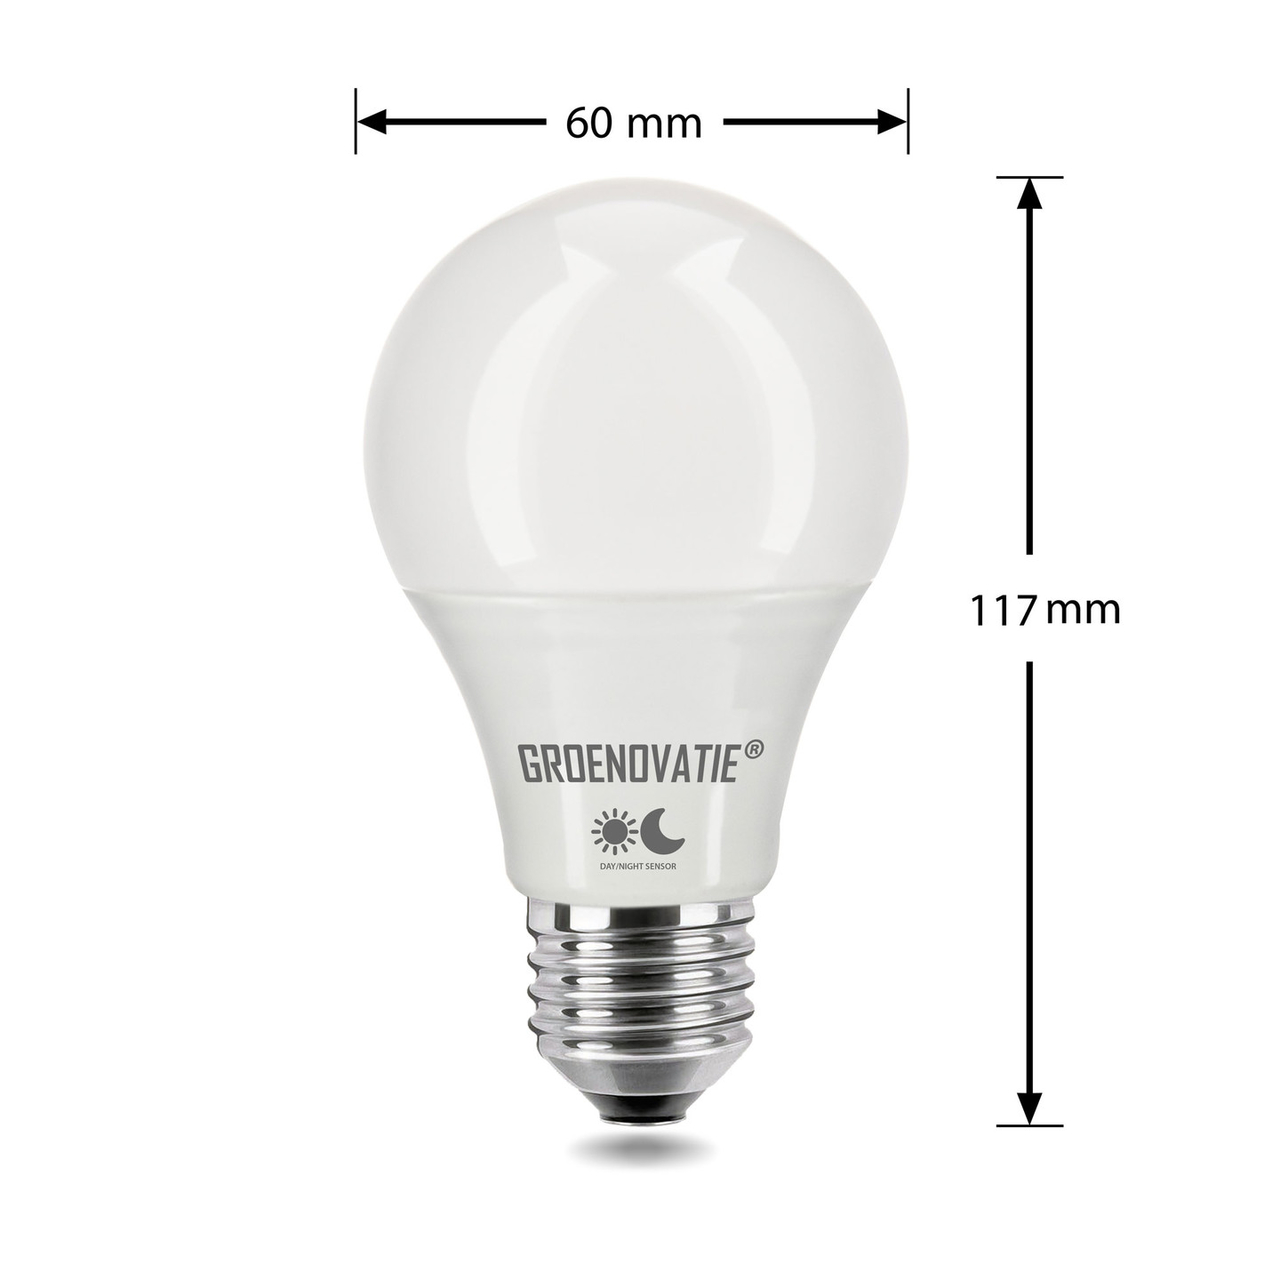 lijst voor de helft pijn doen E27 LED Lamp 5W Warm Wit, Schemersensor - Automatisch schakelen